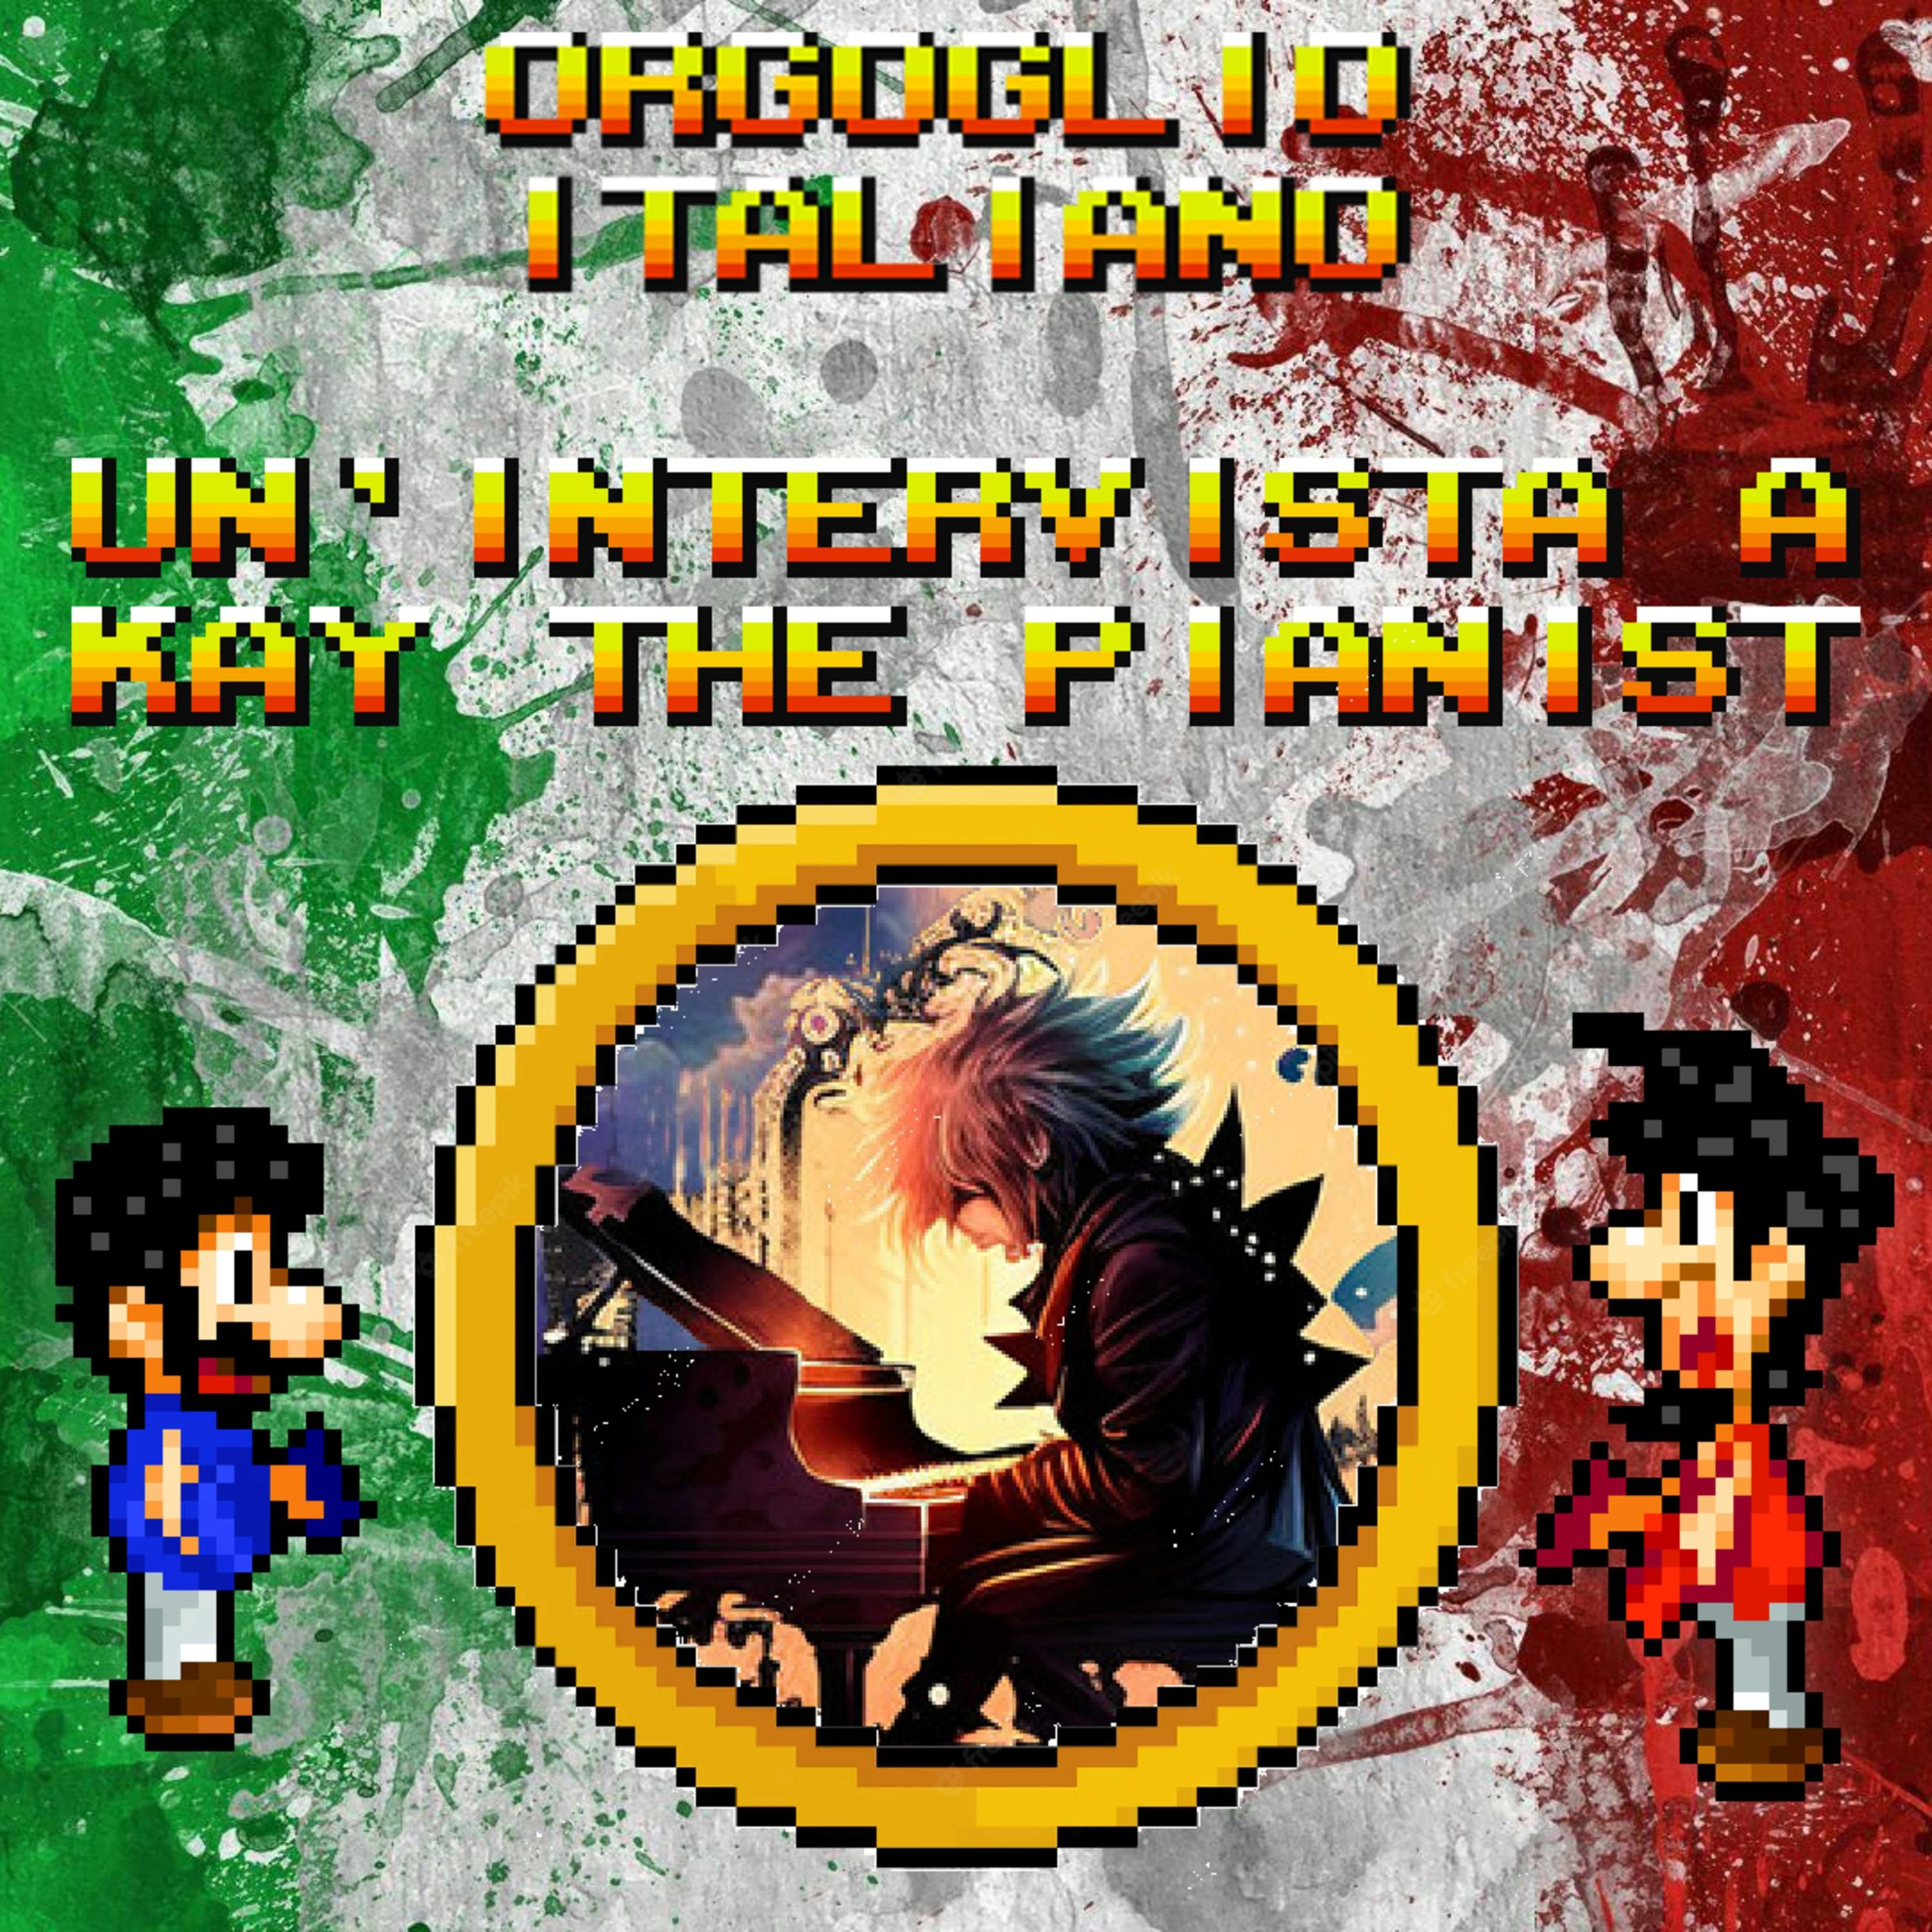 Orgoglio Italiano - Un'intervista a Kay The Pianist